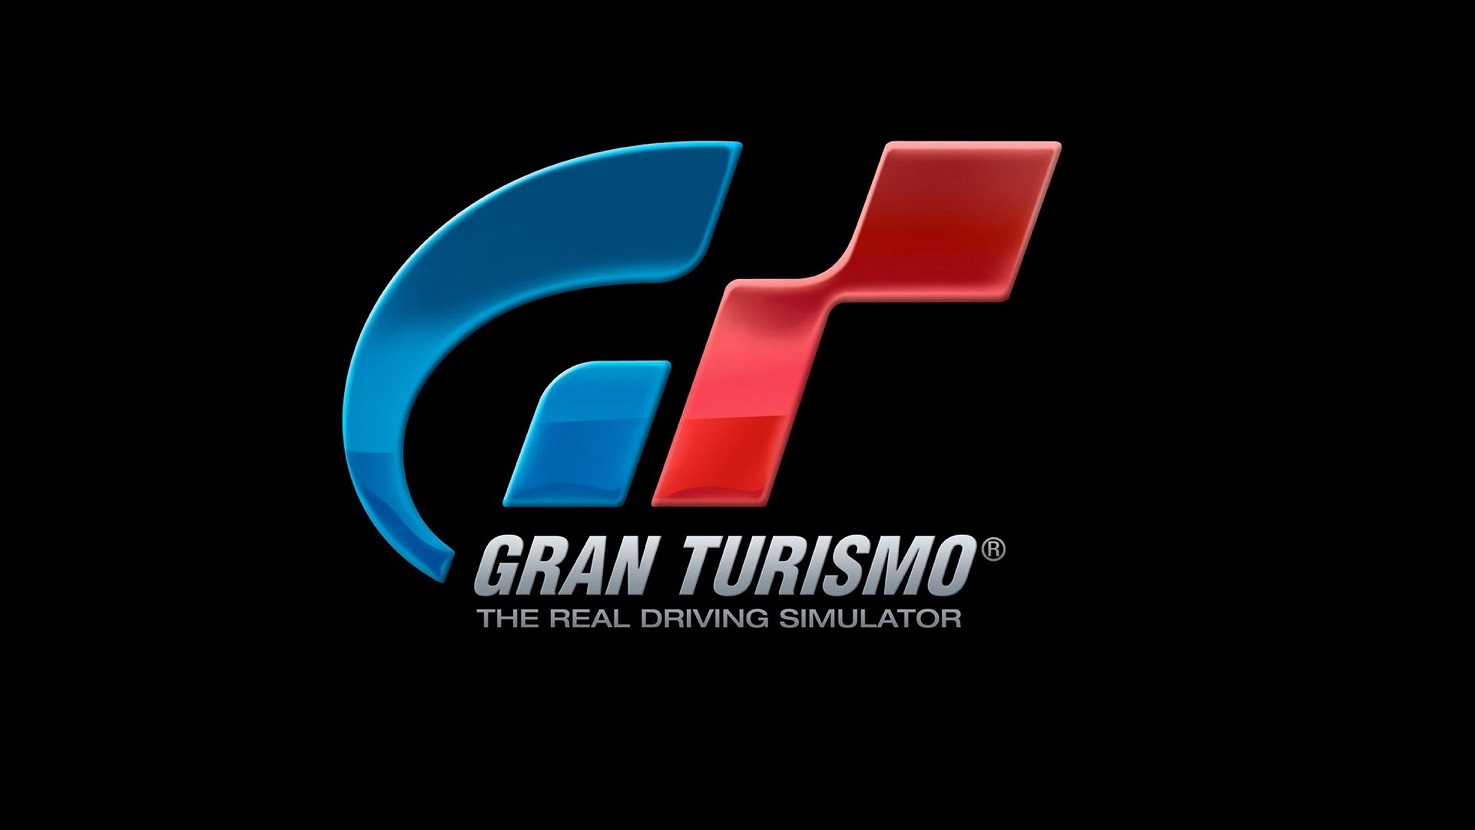 Новая Gran Turismo находится в разработке. Это подтвердил глава студии 